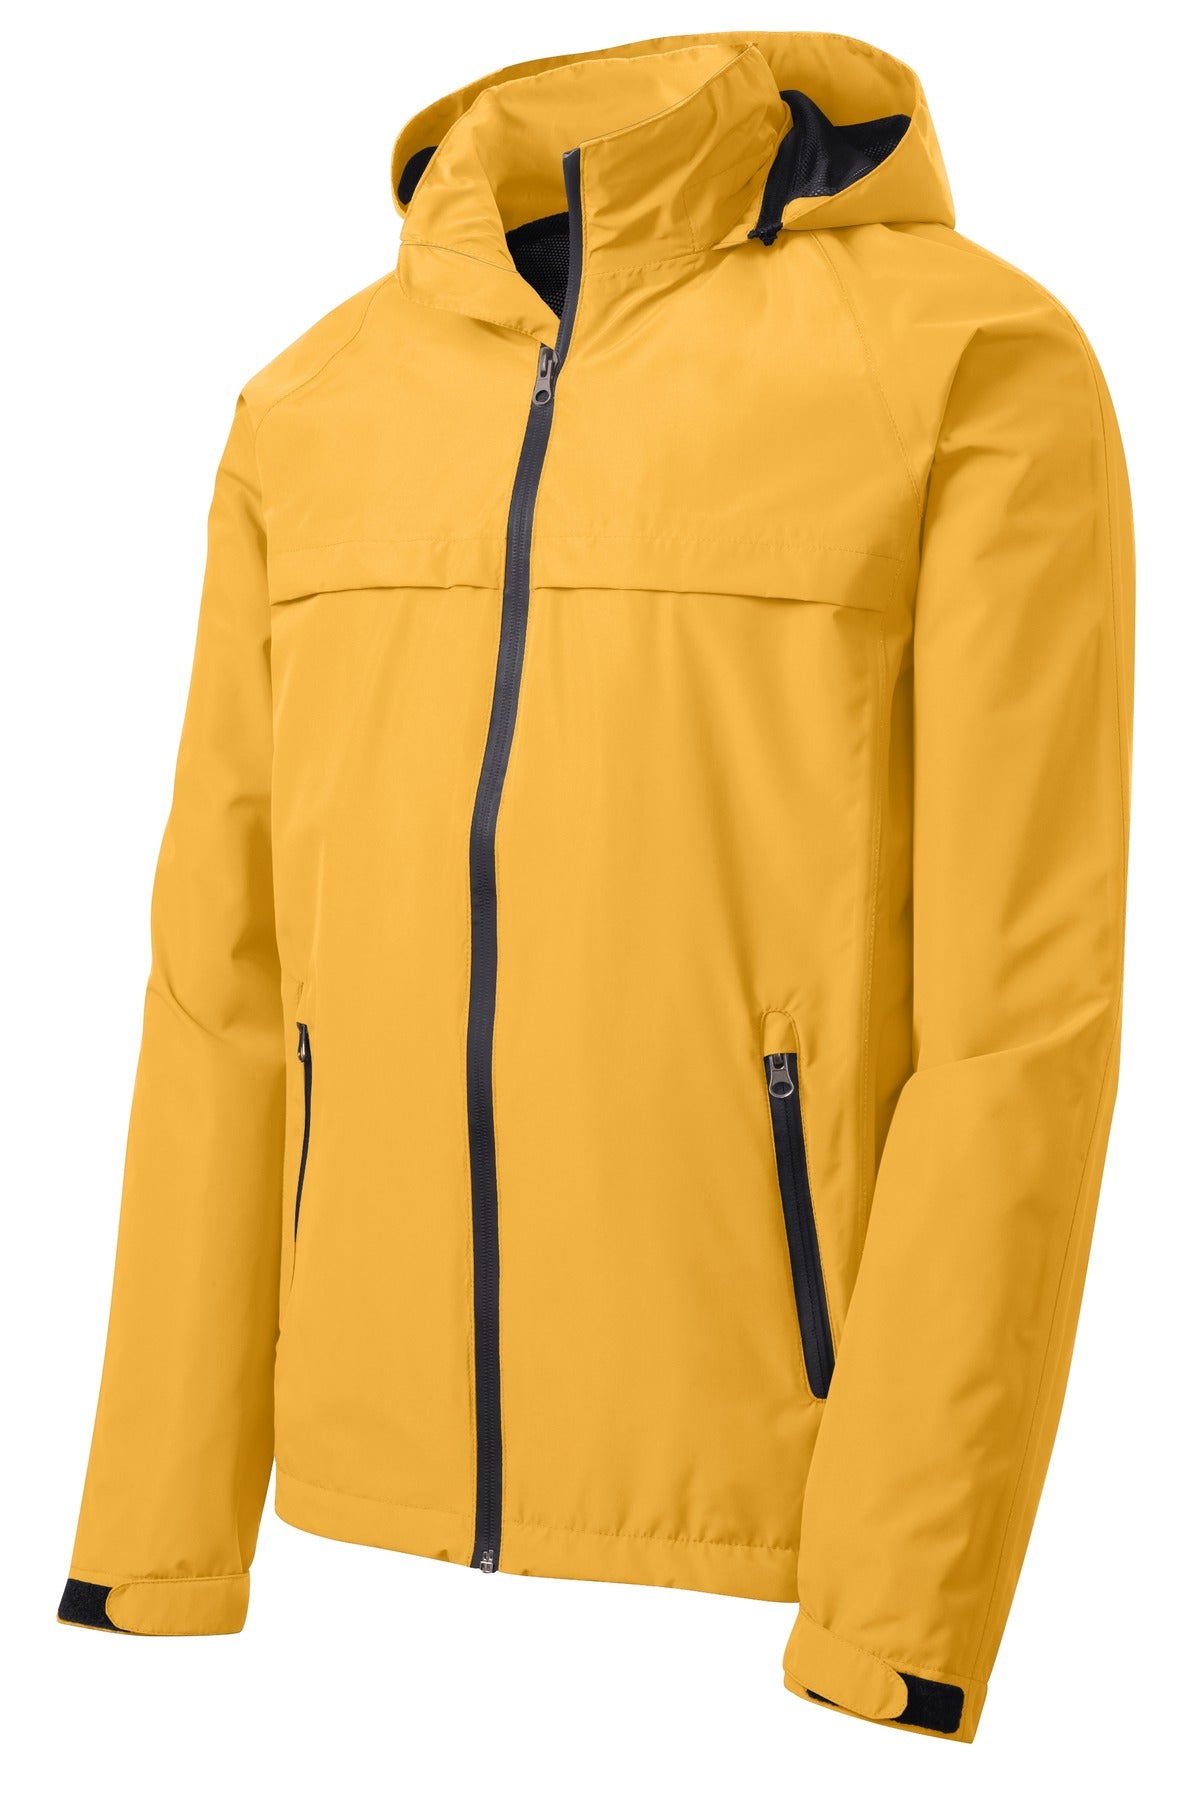 Port Authority Torrent Waterproof Jacket. J333